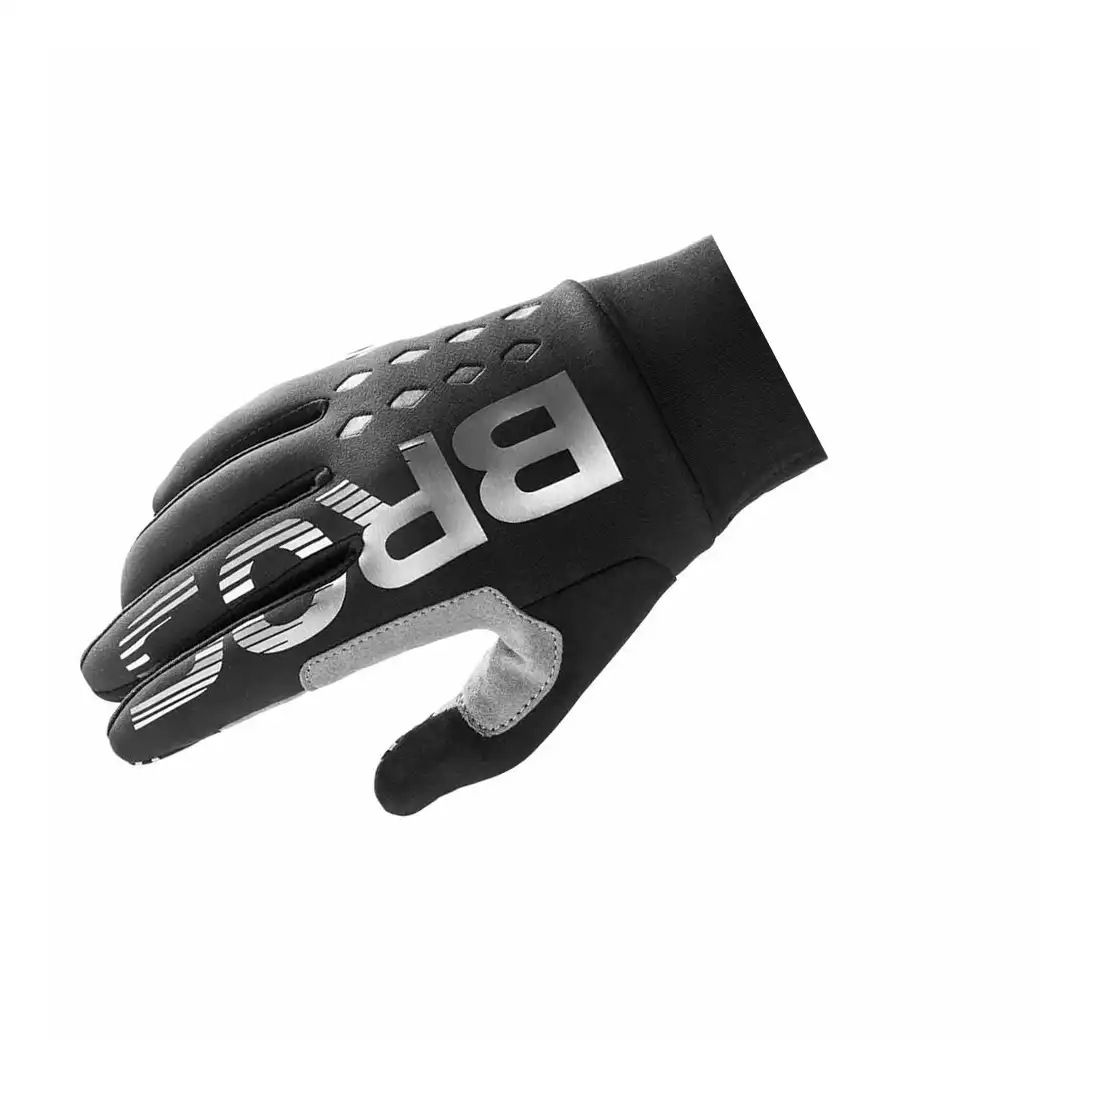 Rockbros jesienne rękawiczki rowerowe ocieplane Czarne S209BK